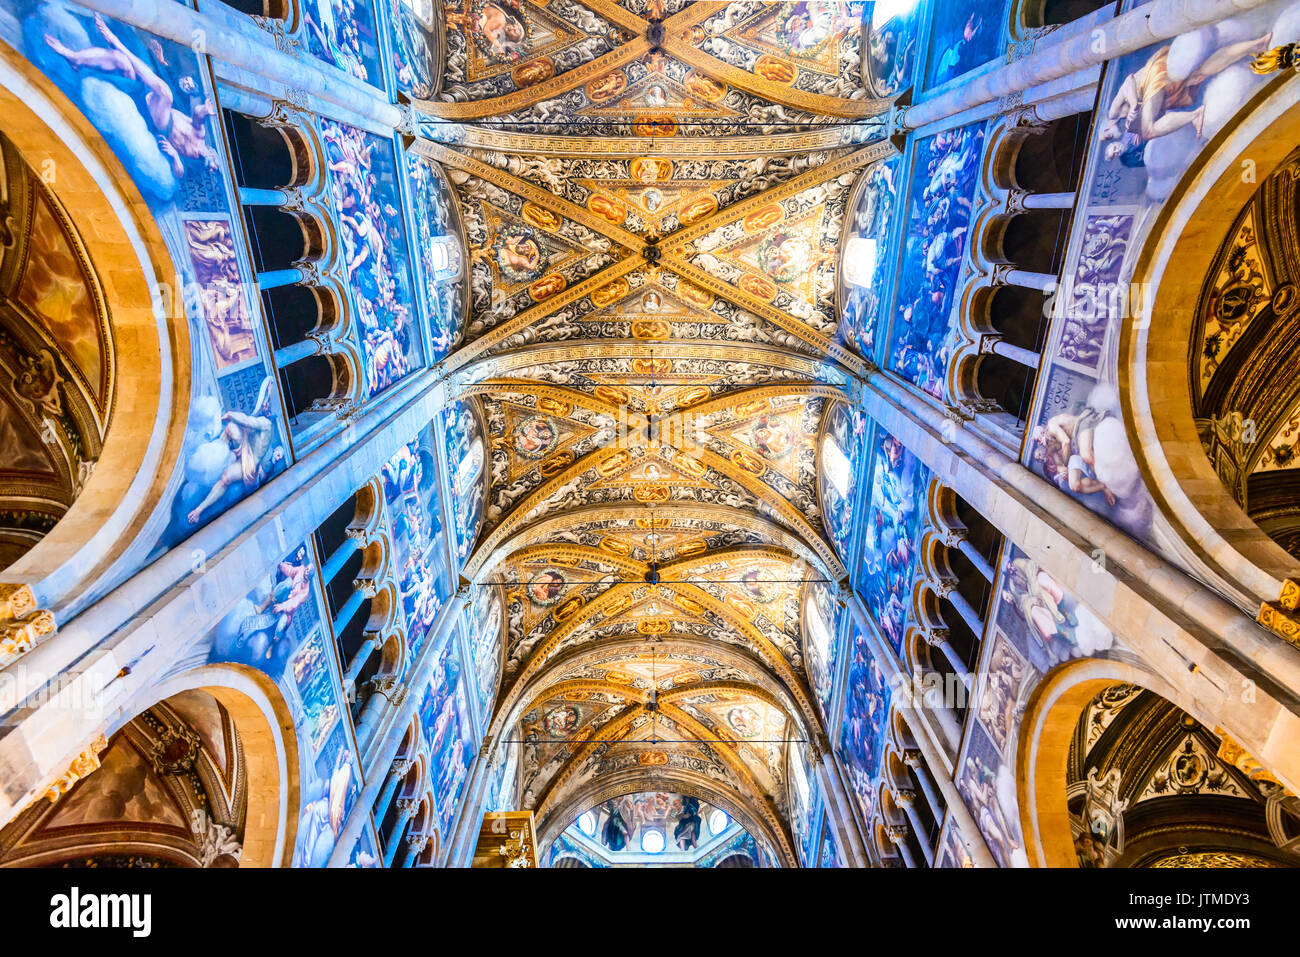 PARMA, Italien - 4. JUNI 2017: Parma, Italien - Innenraum der Catedrale de Parma, im Jahr 1059 gebaut. Die romanische Architektur in der Emilia-Romagna. Stockfoto